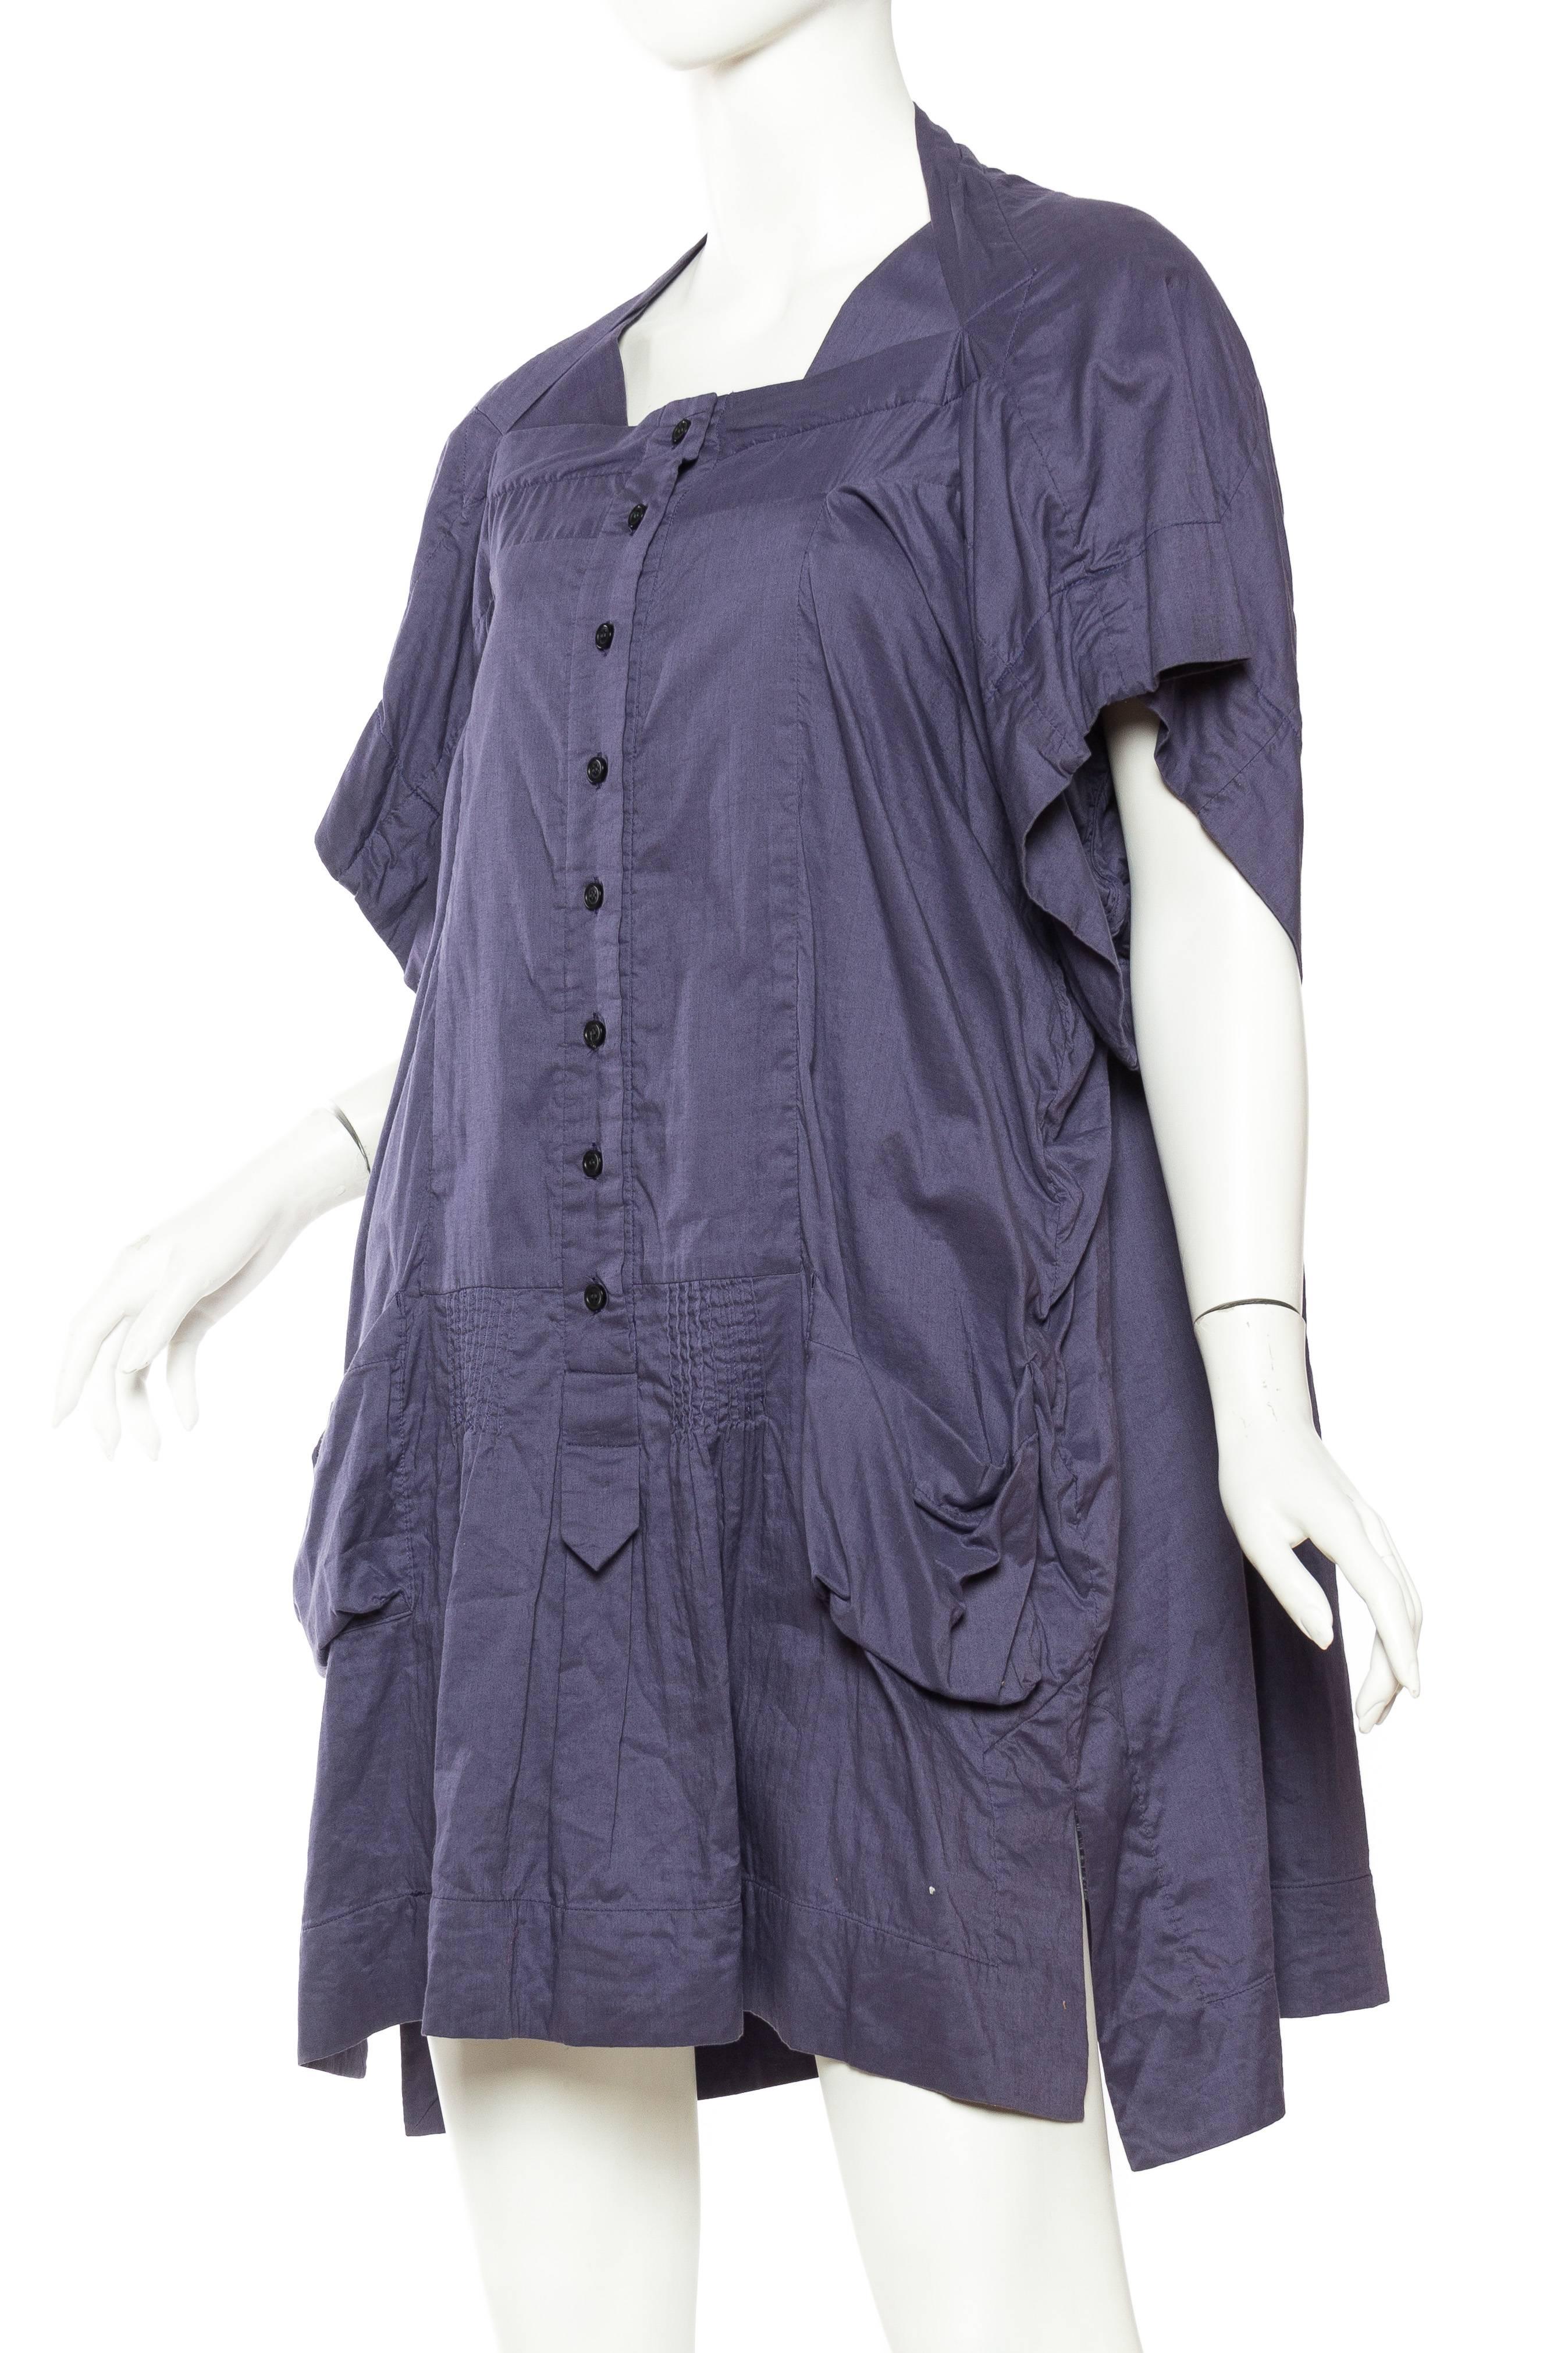 Bernhard Willhelm Cotton Dress 1